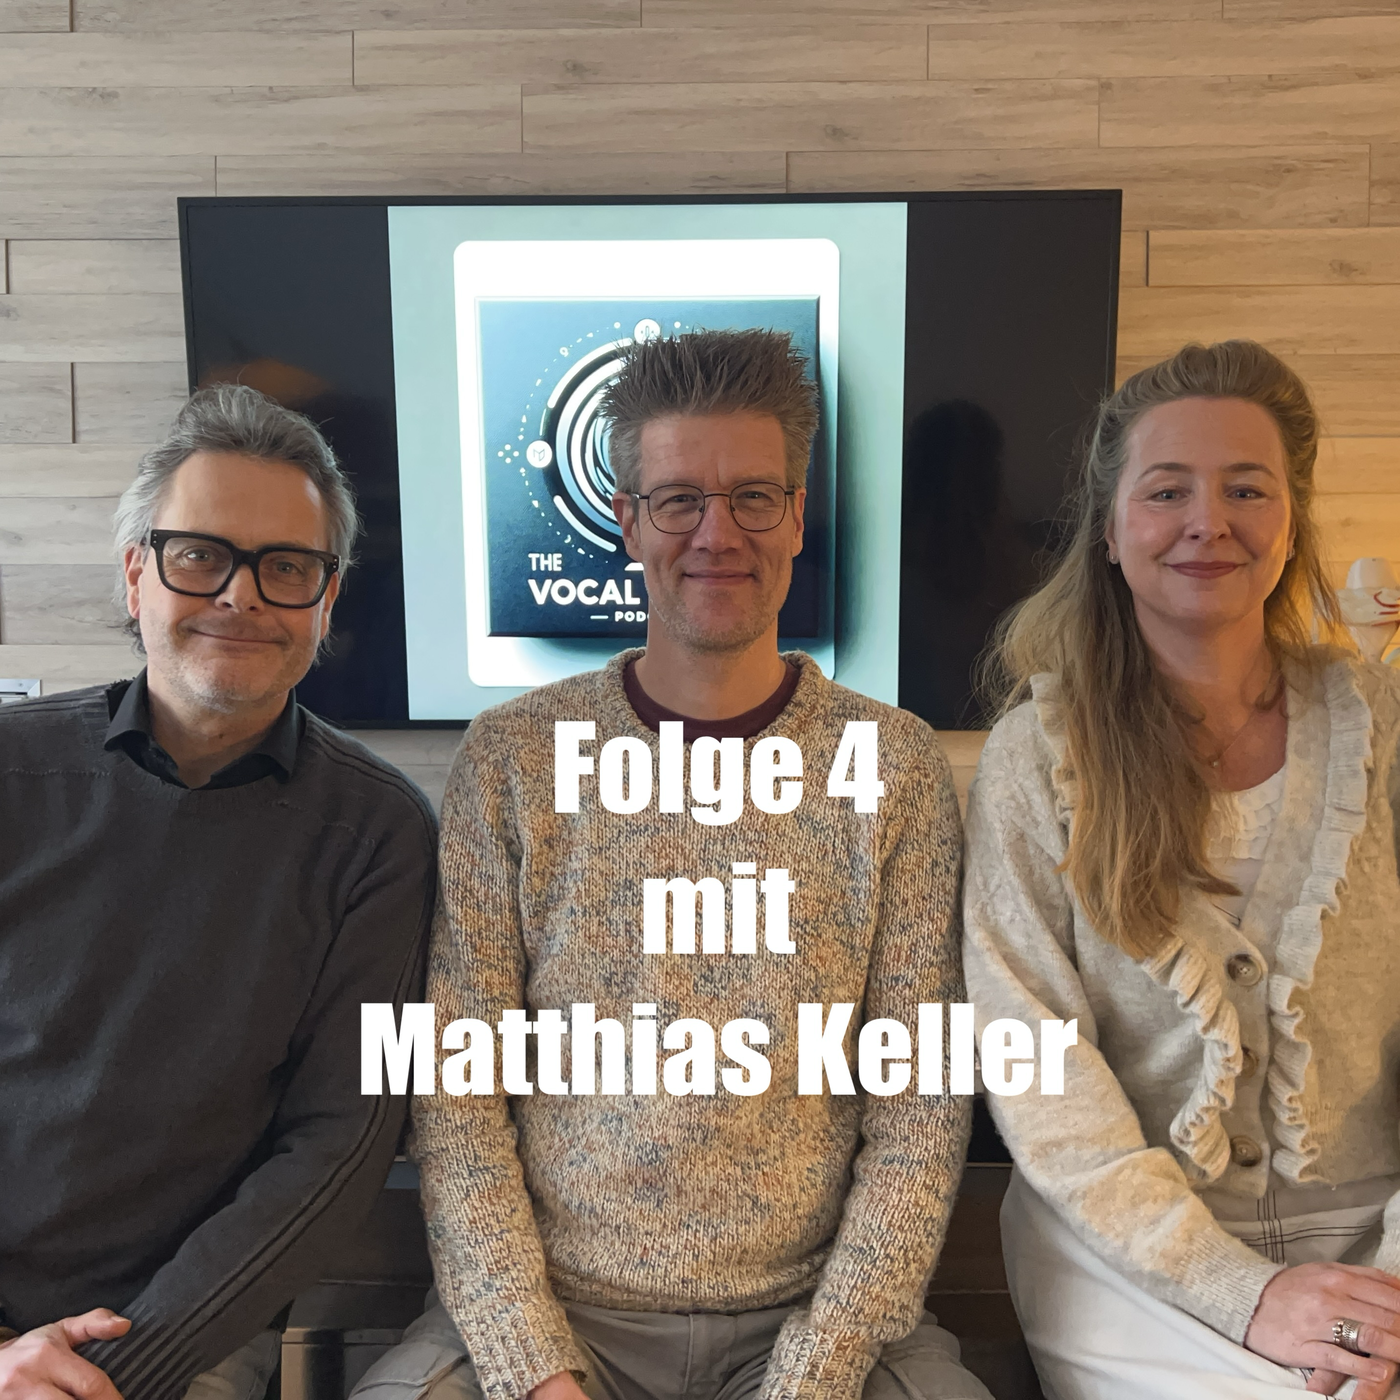 Folge 4: Matthias Keller - Ist die Stimme kein Instrument?